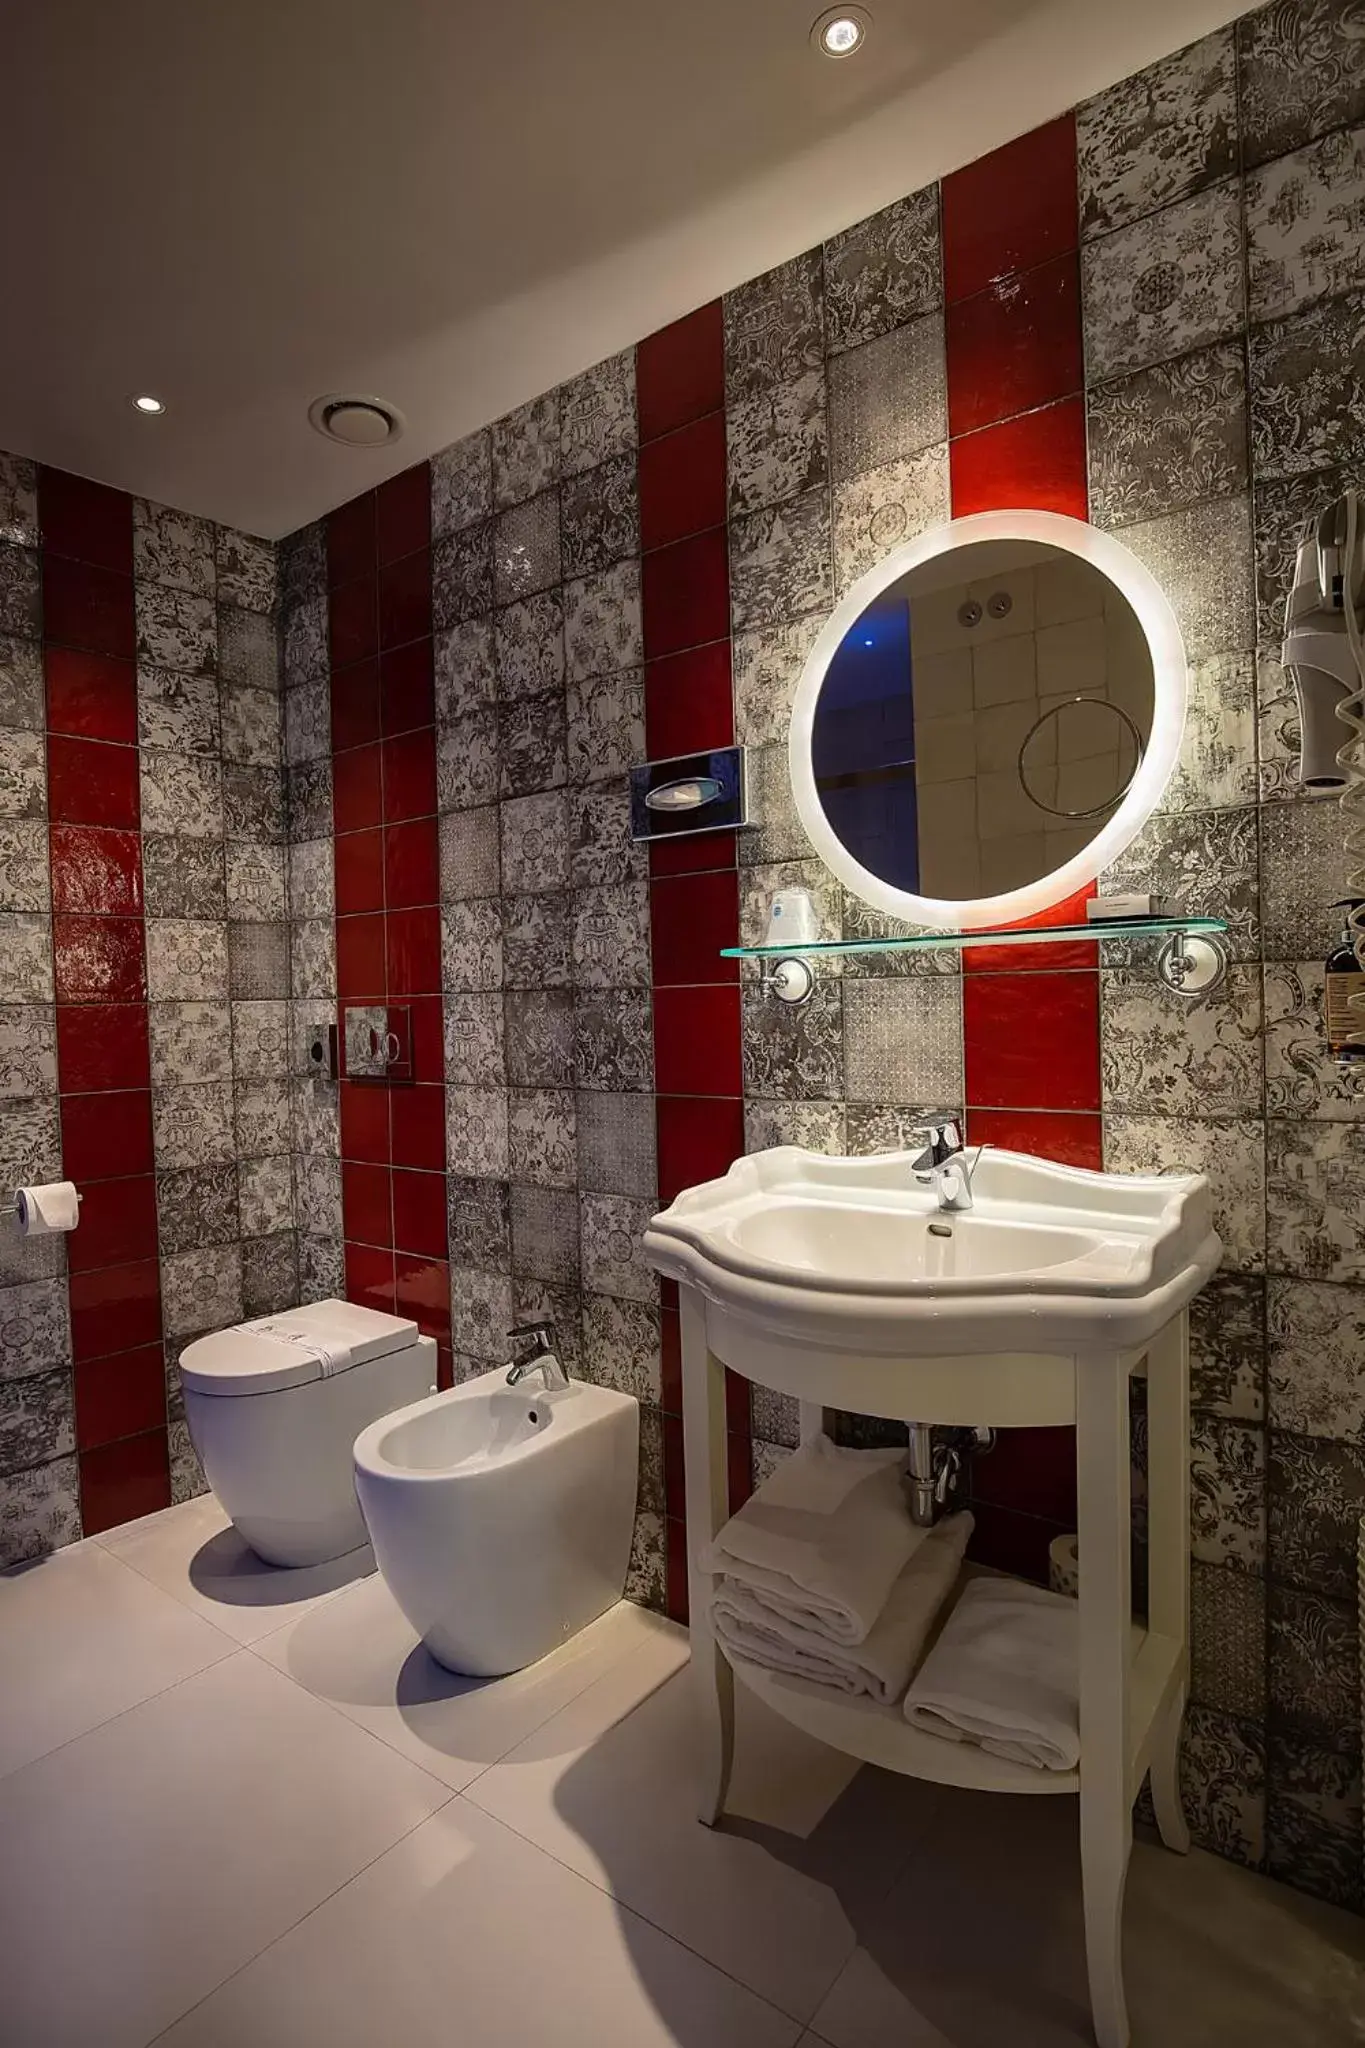 Decorative detail, Bathroom in Zanhotel Regina